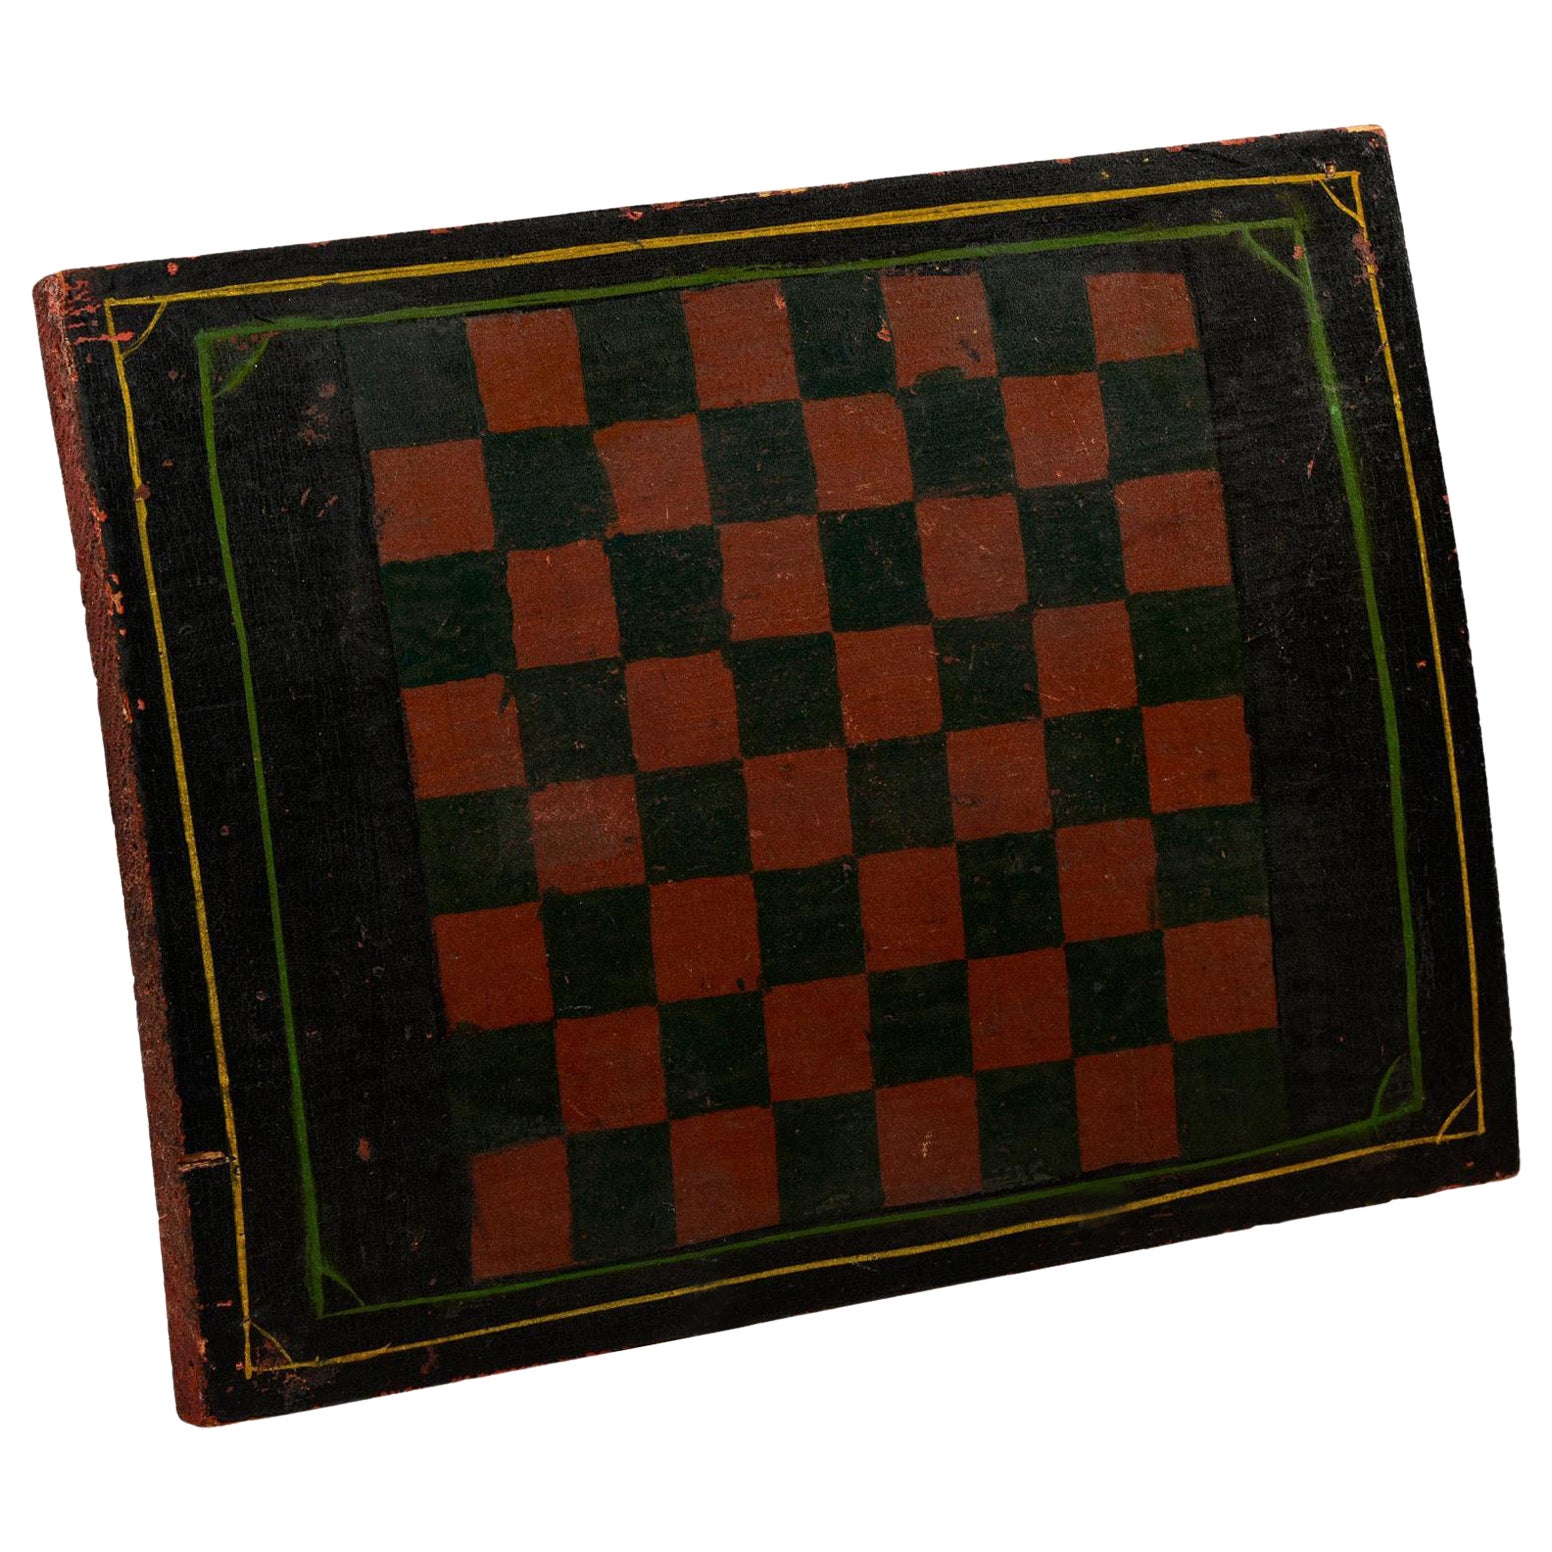 Planche de jeu du début du 20e siècle avec carrés noirs et rouges peints à l'original